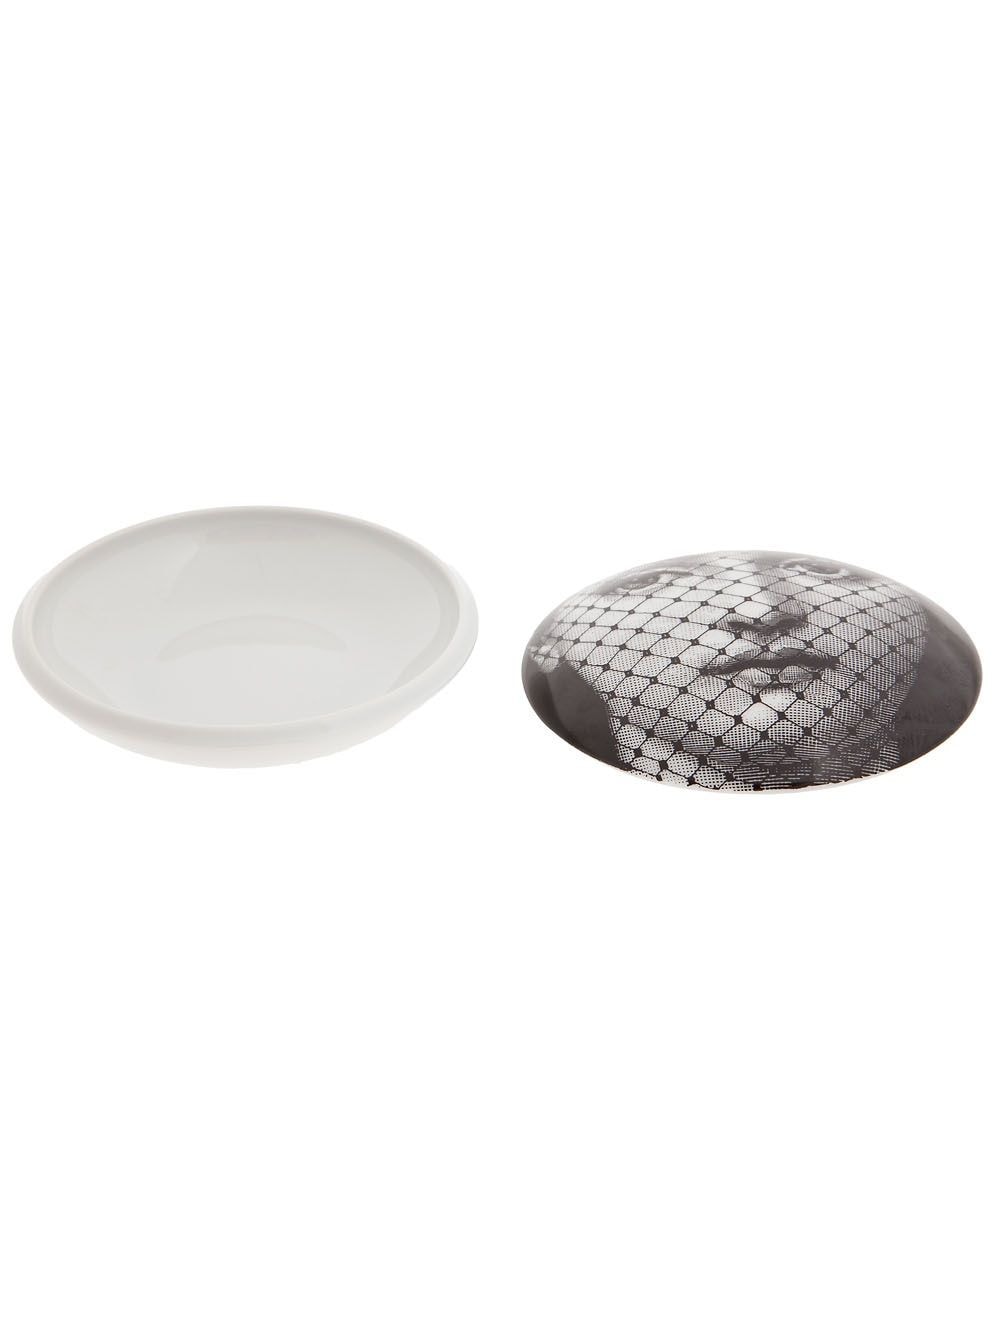 Fornasetti Small Ceramic Box In Grey